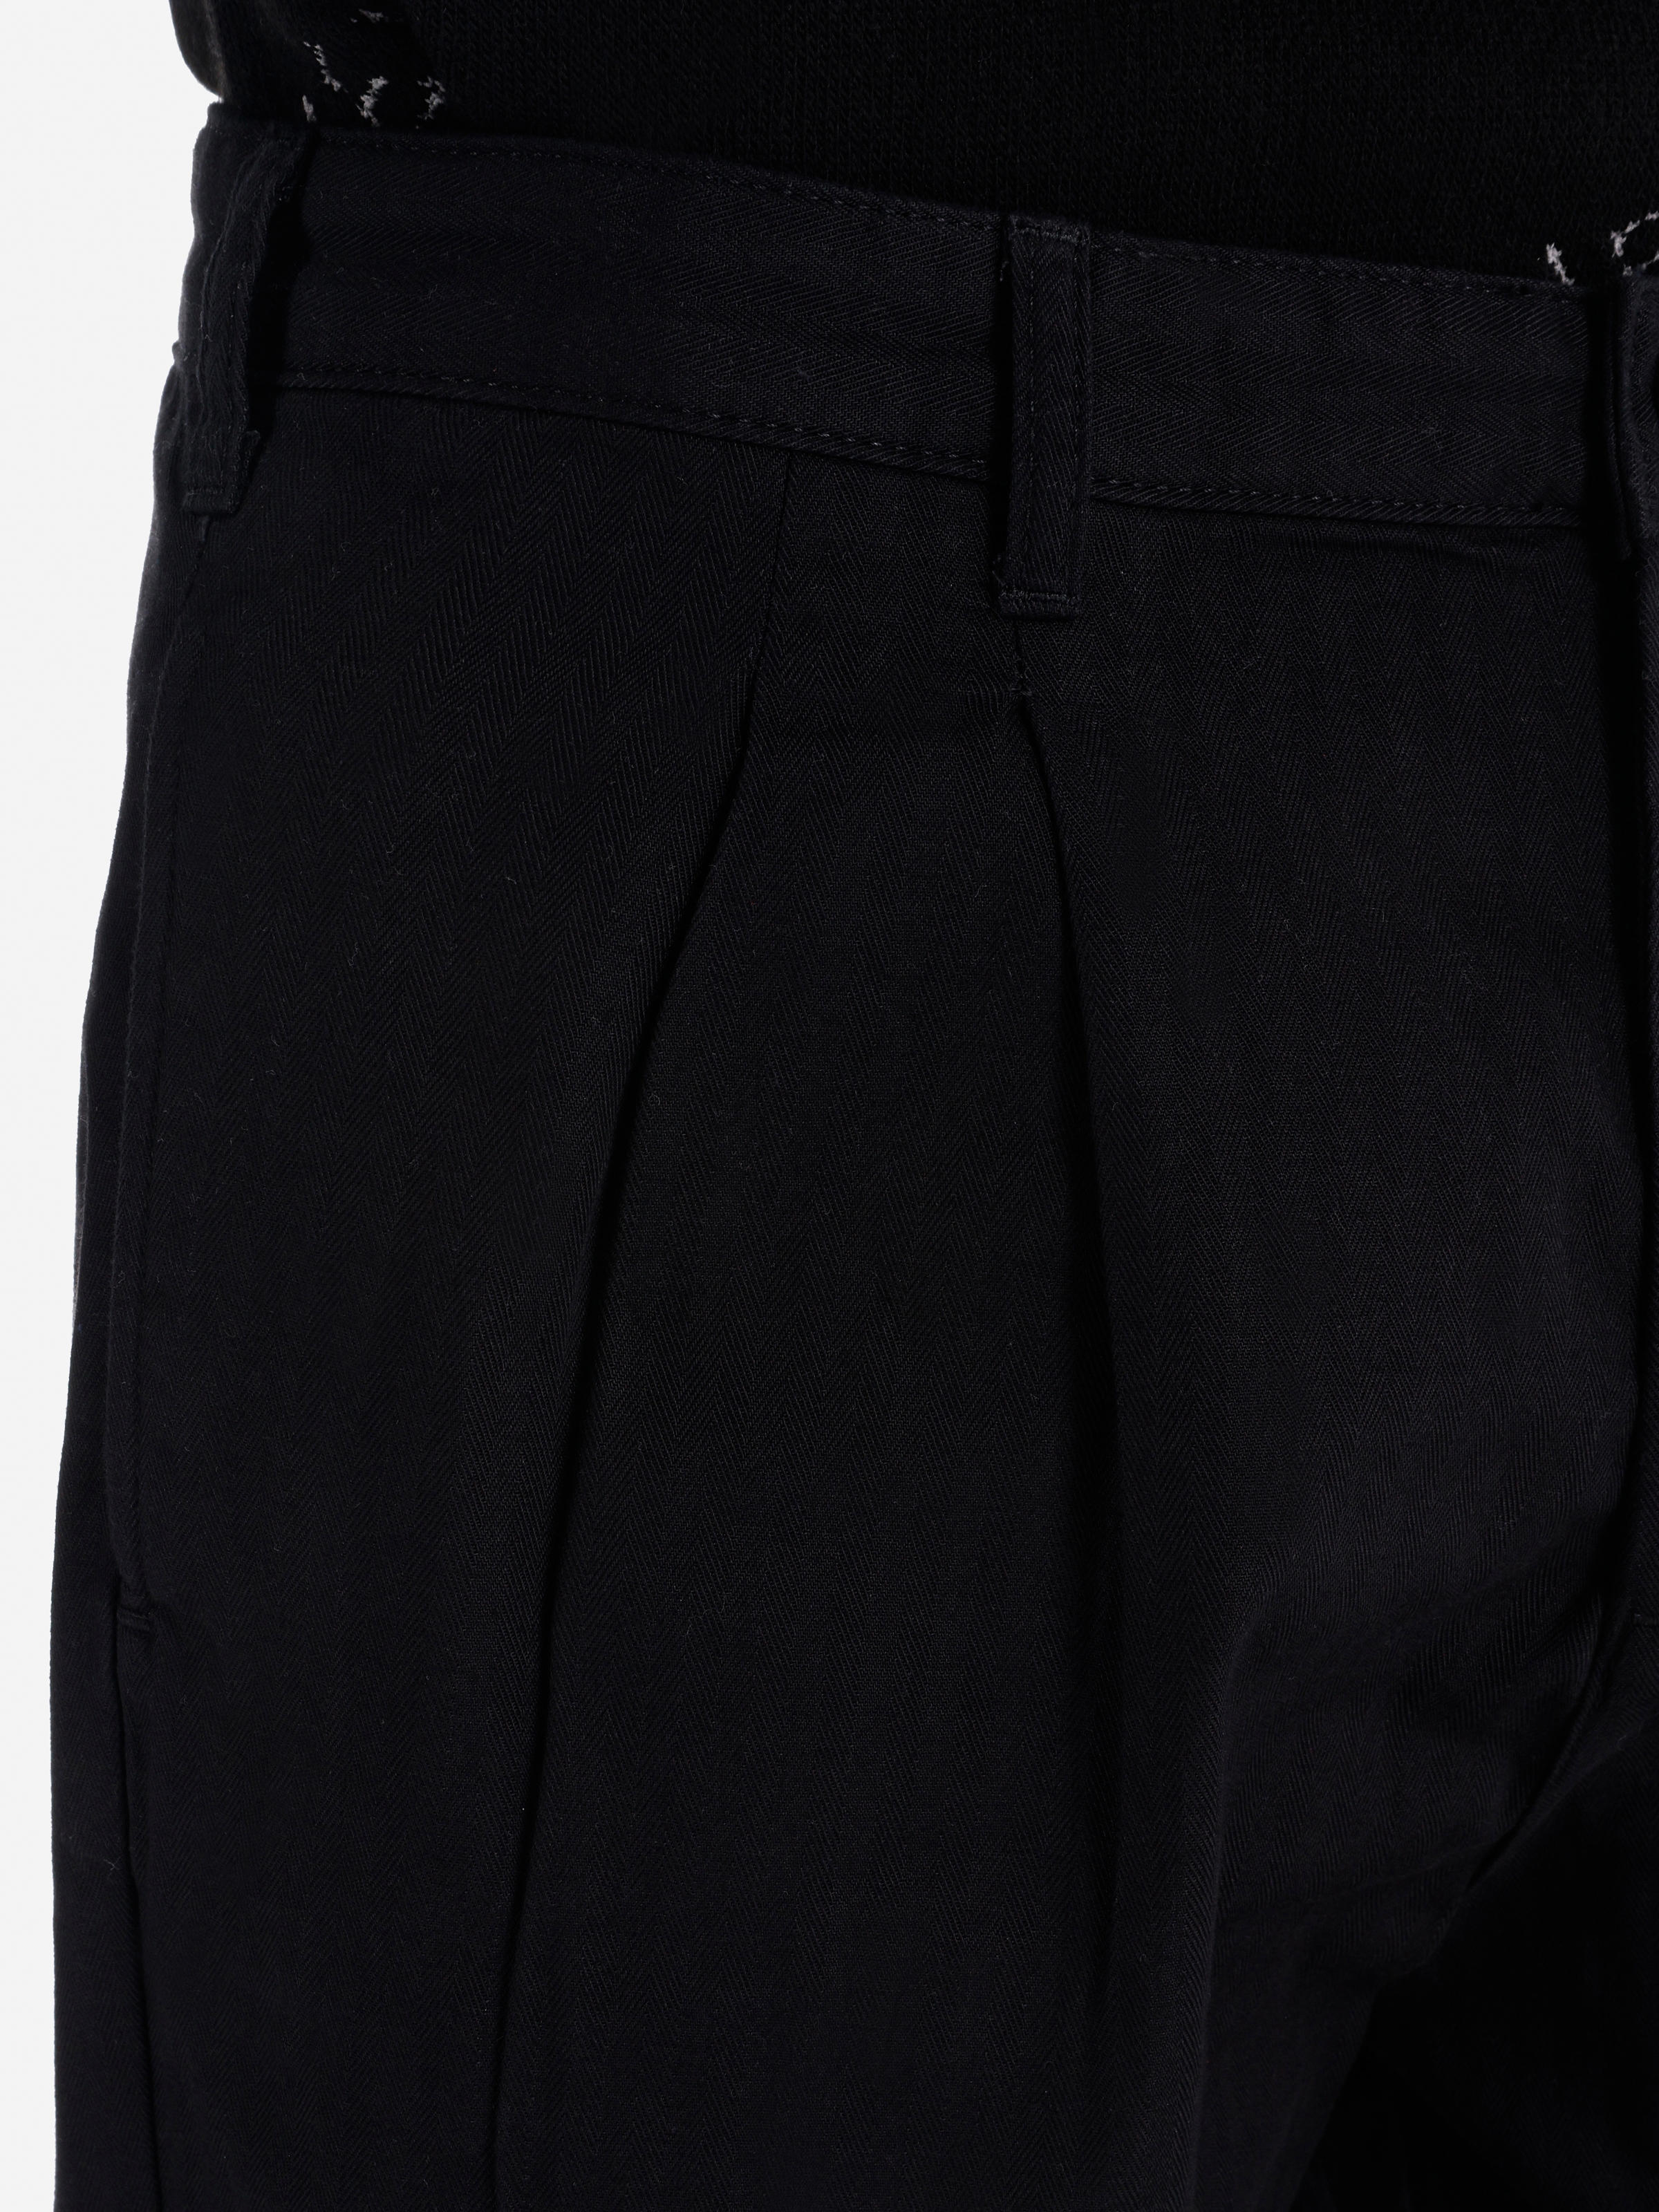 Afișați detalii pentru Pantaloni De Barbati Negru   